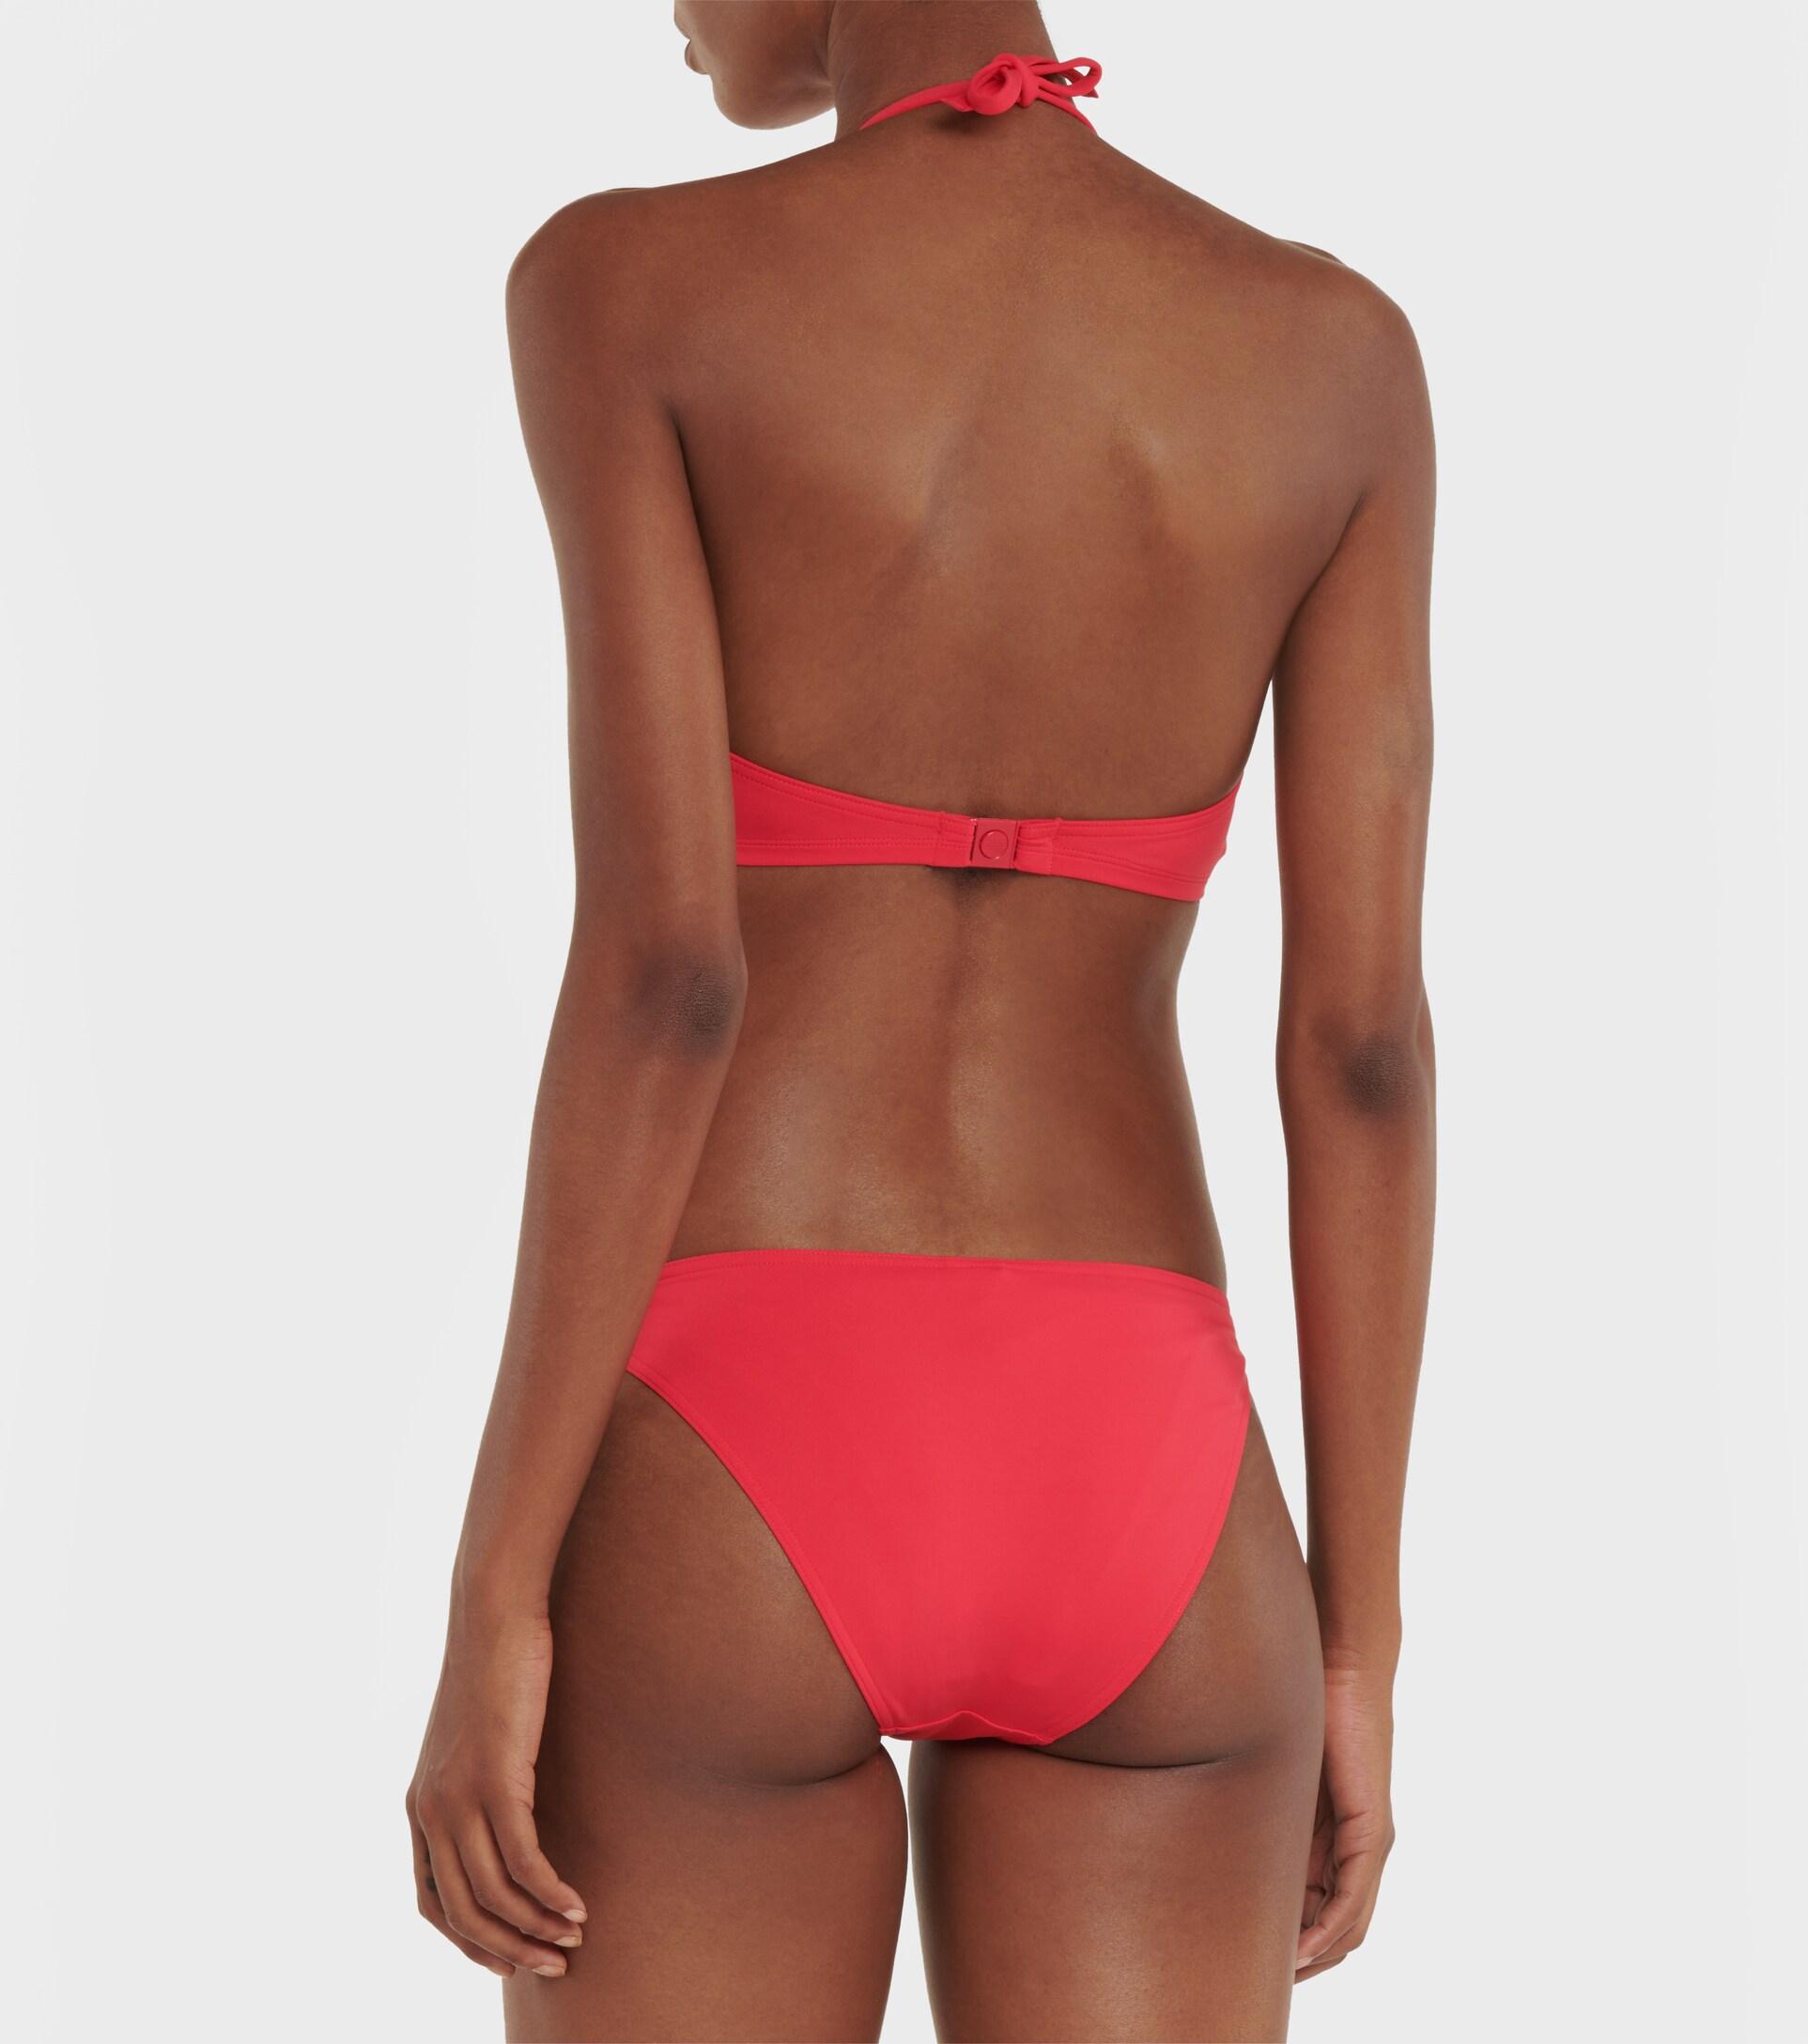 Mujer Ropa de Moda de baño de Bikinis y bañadores Braga de bikini Fripon de talle bajo Eres de Tejido sintético de color Rosa 